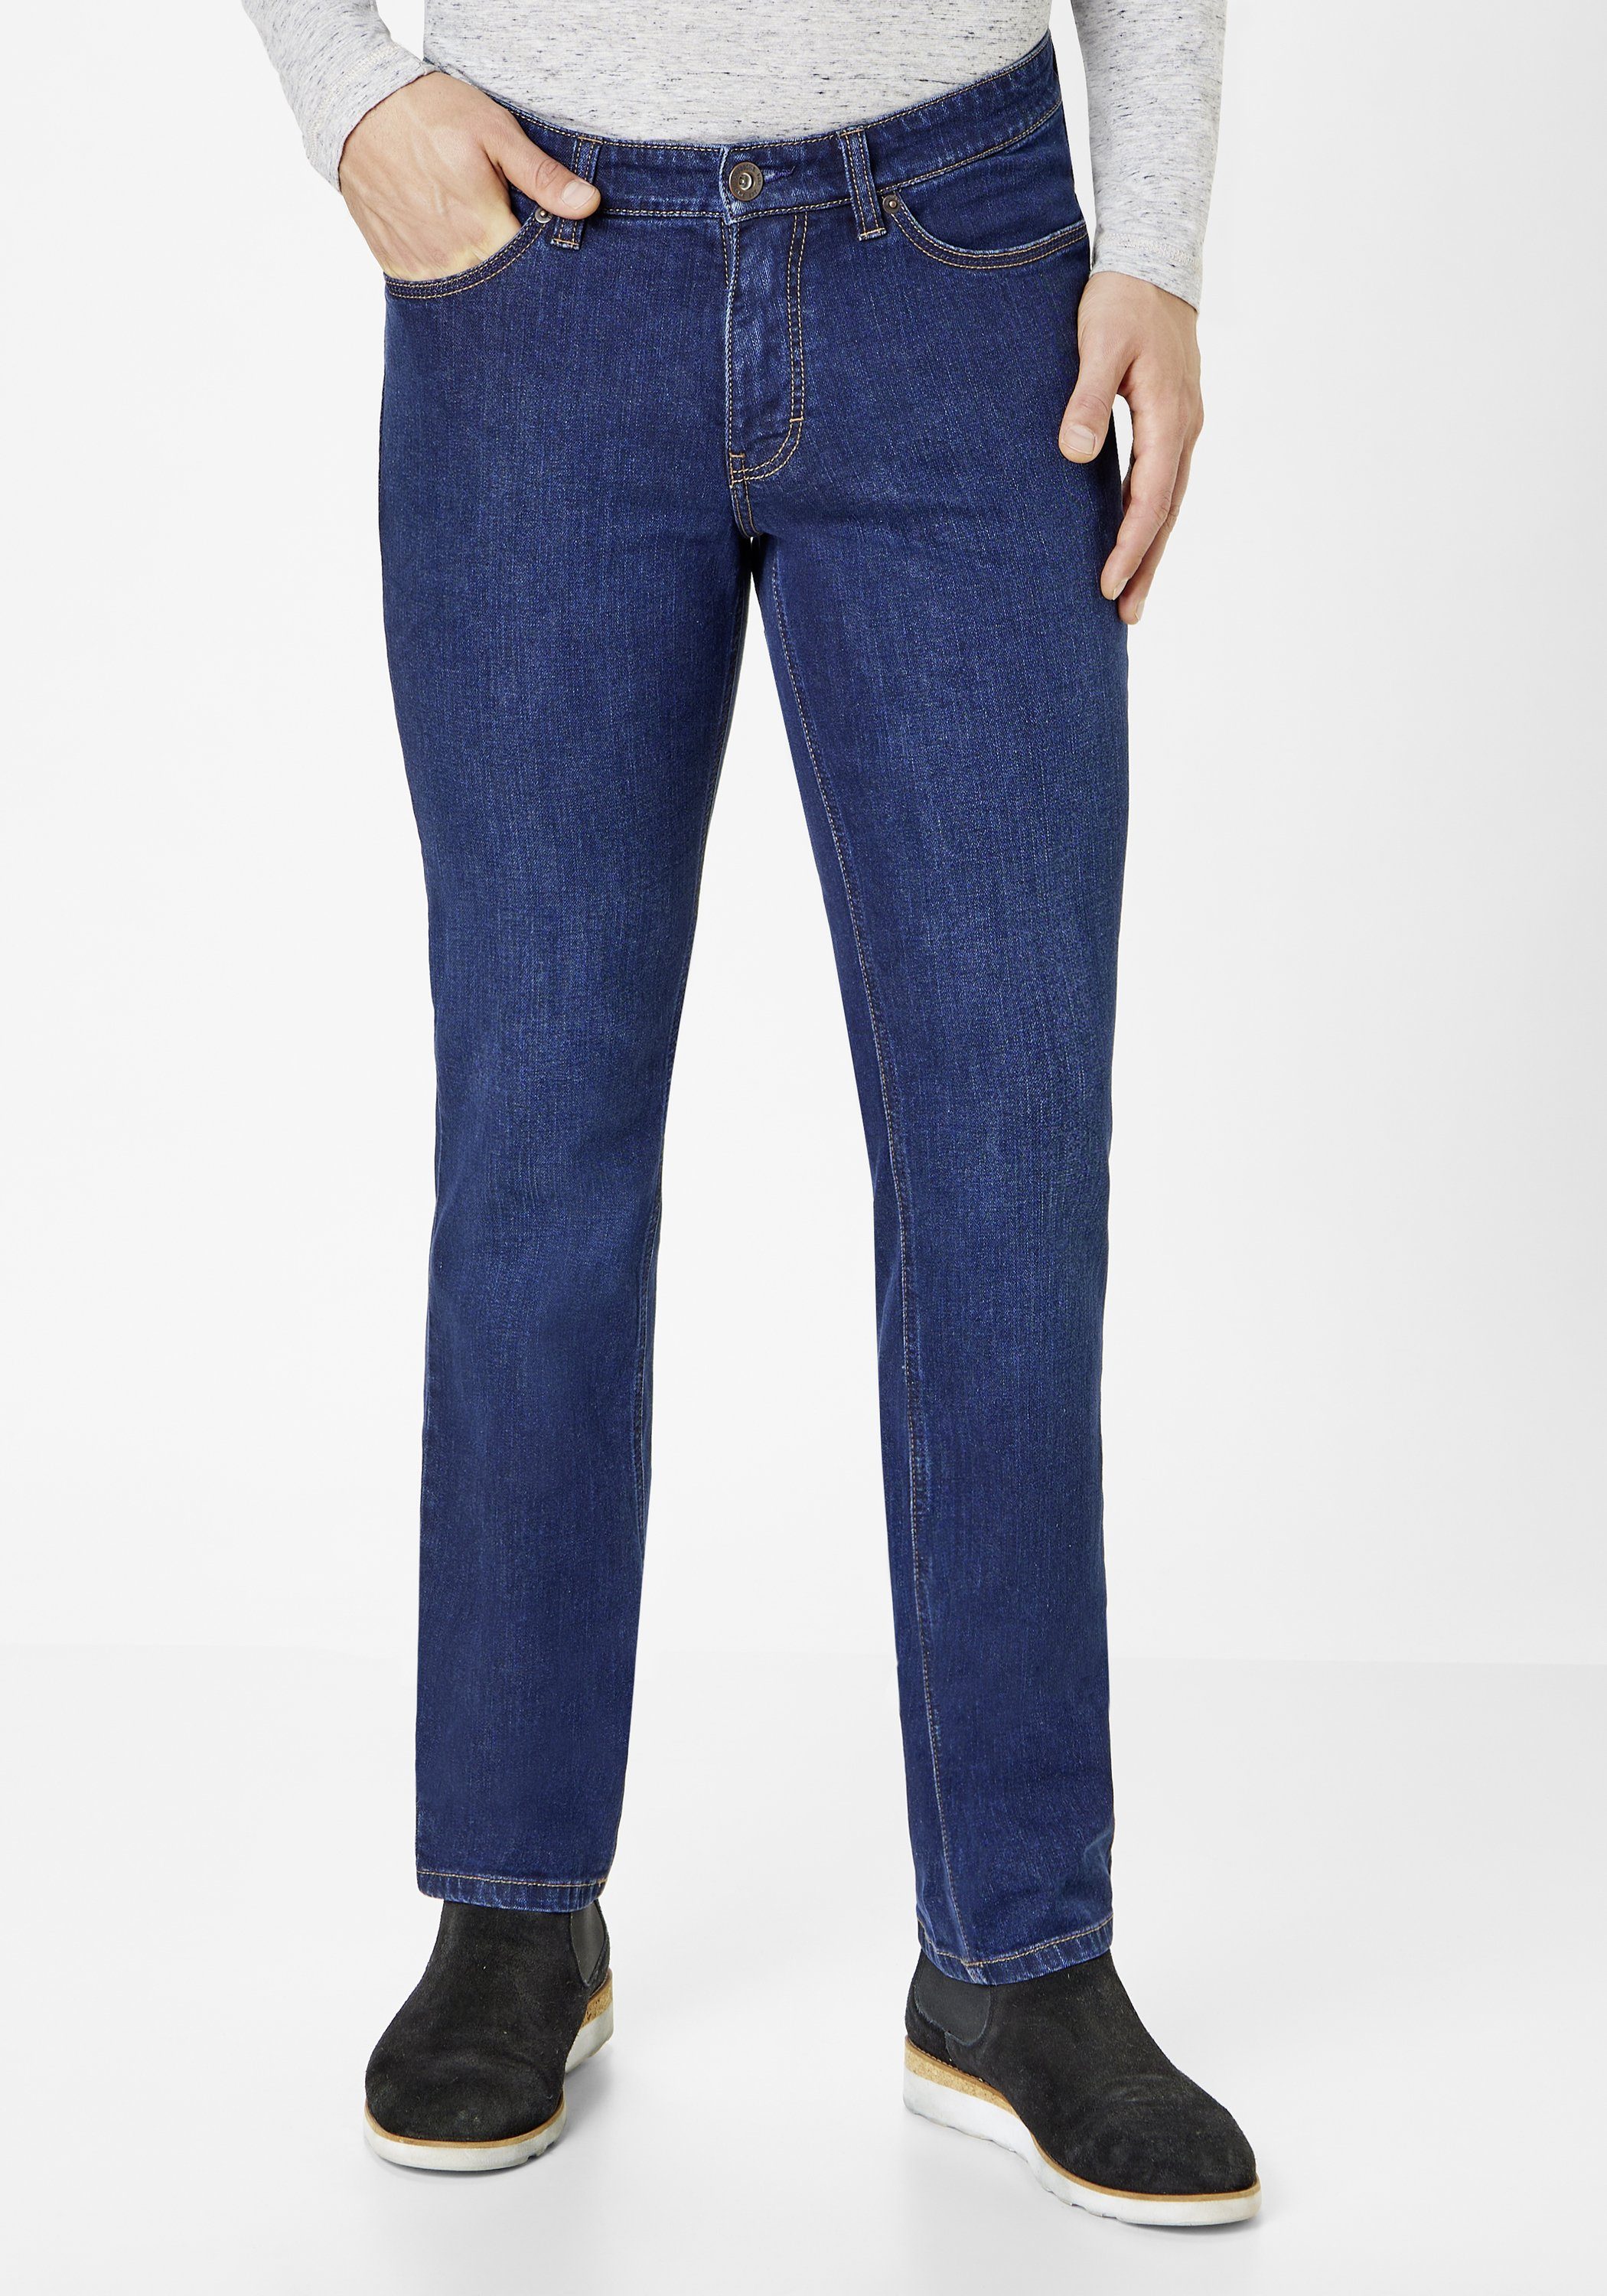 Paddock's Slim-fit-Jeans Slim-Fit dark PIPE stone Elastische Jeans used PIPE